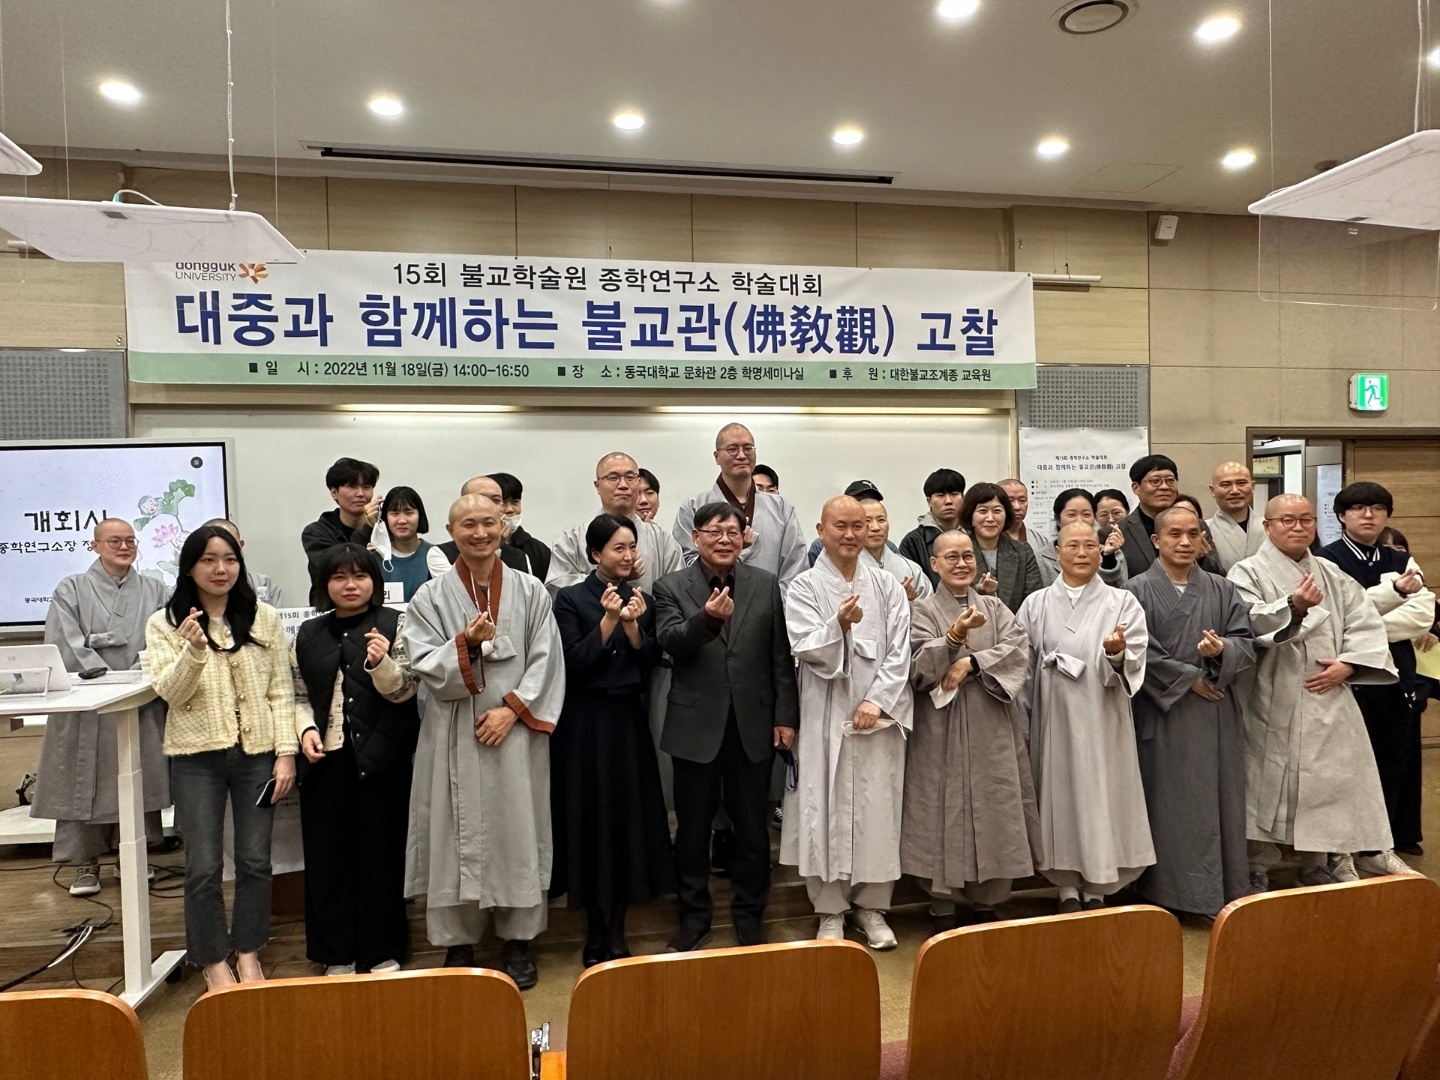 2022년 종학연구소 제15회 학술대회 '대중과 함께하는 불교관 고찰' (The 15th Academic Conference of the Institute for the Study of the Jogye Order of Korean Buddhism)